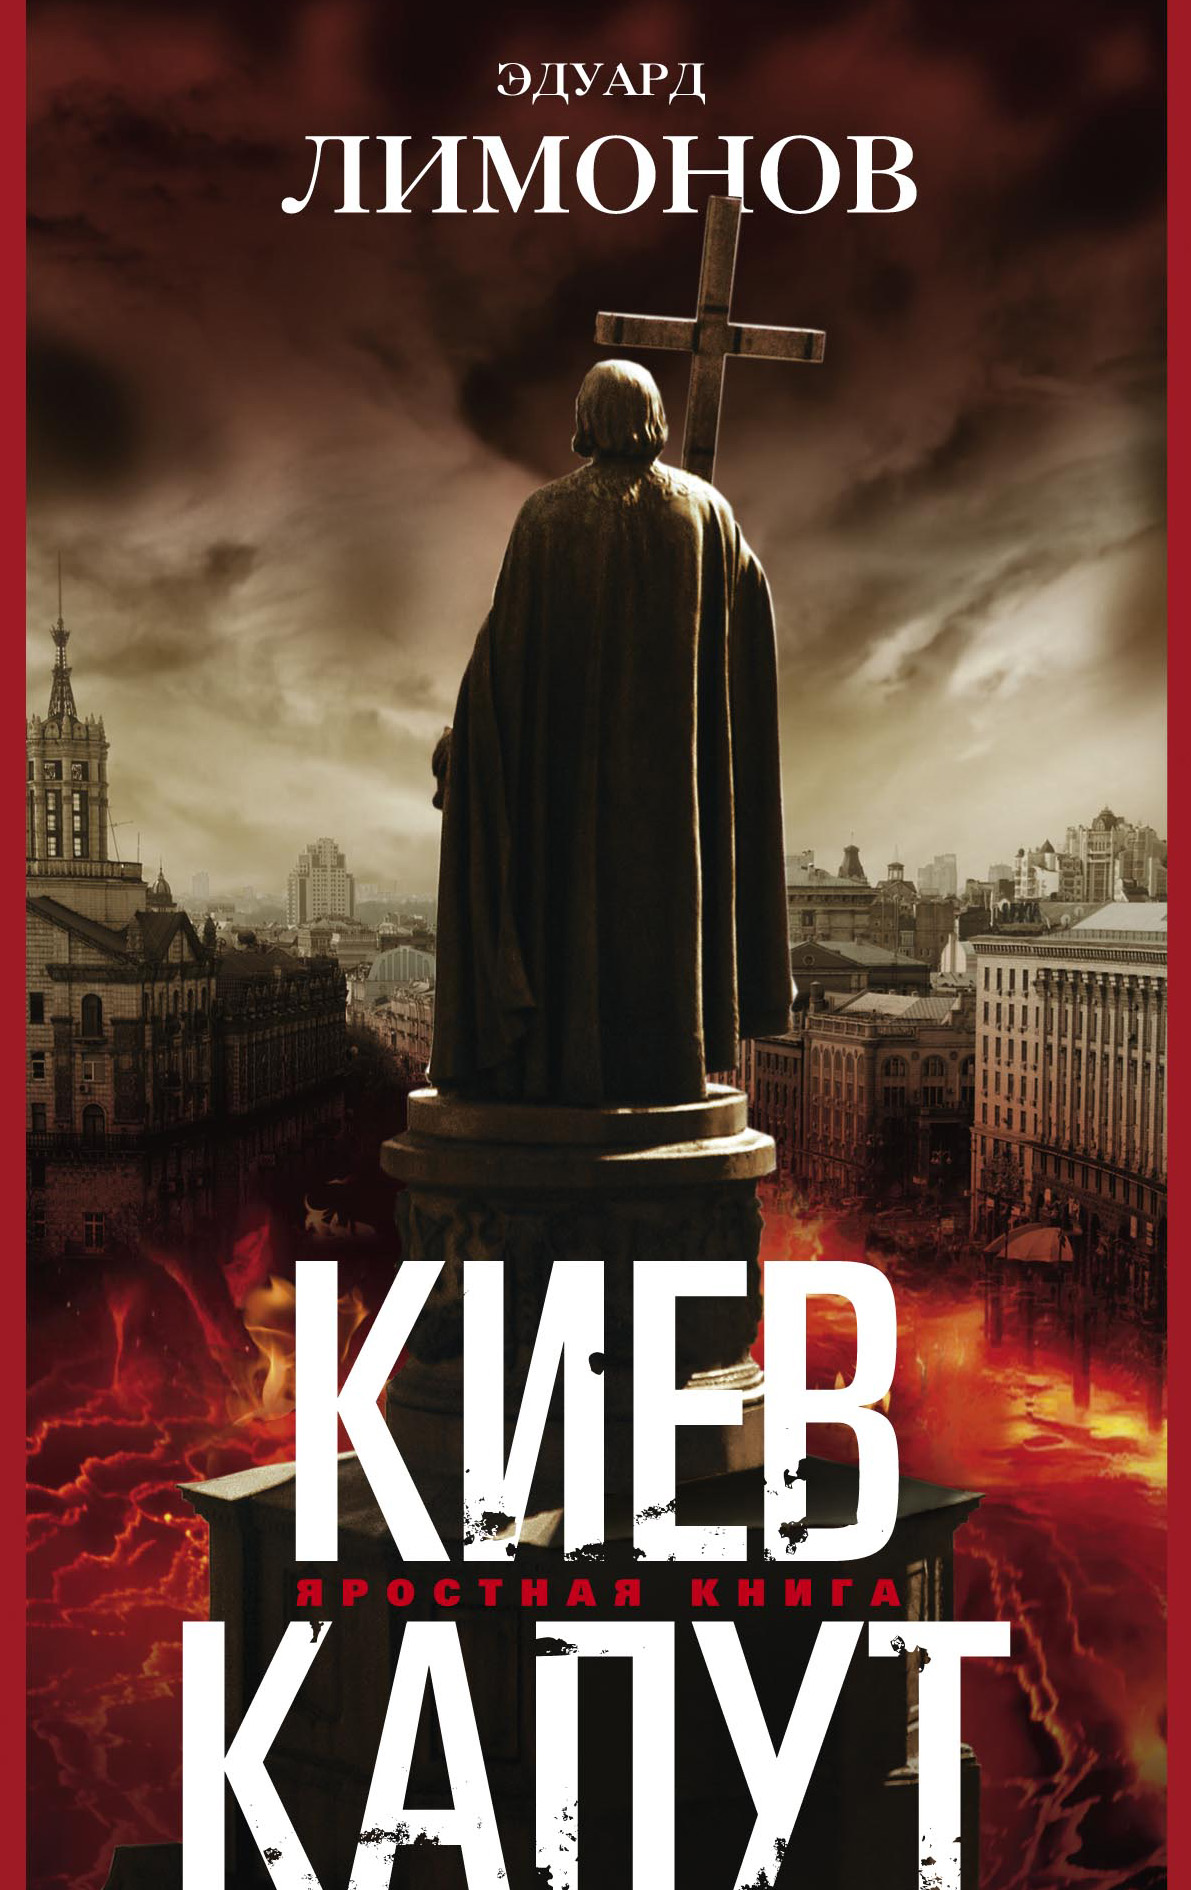 Киев капут: Яростная книга